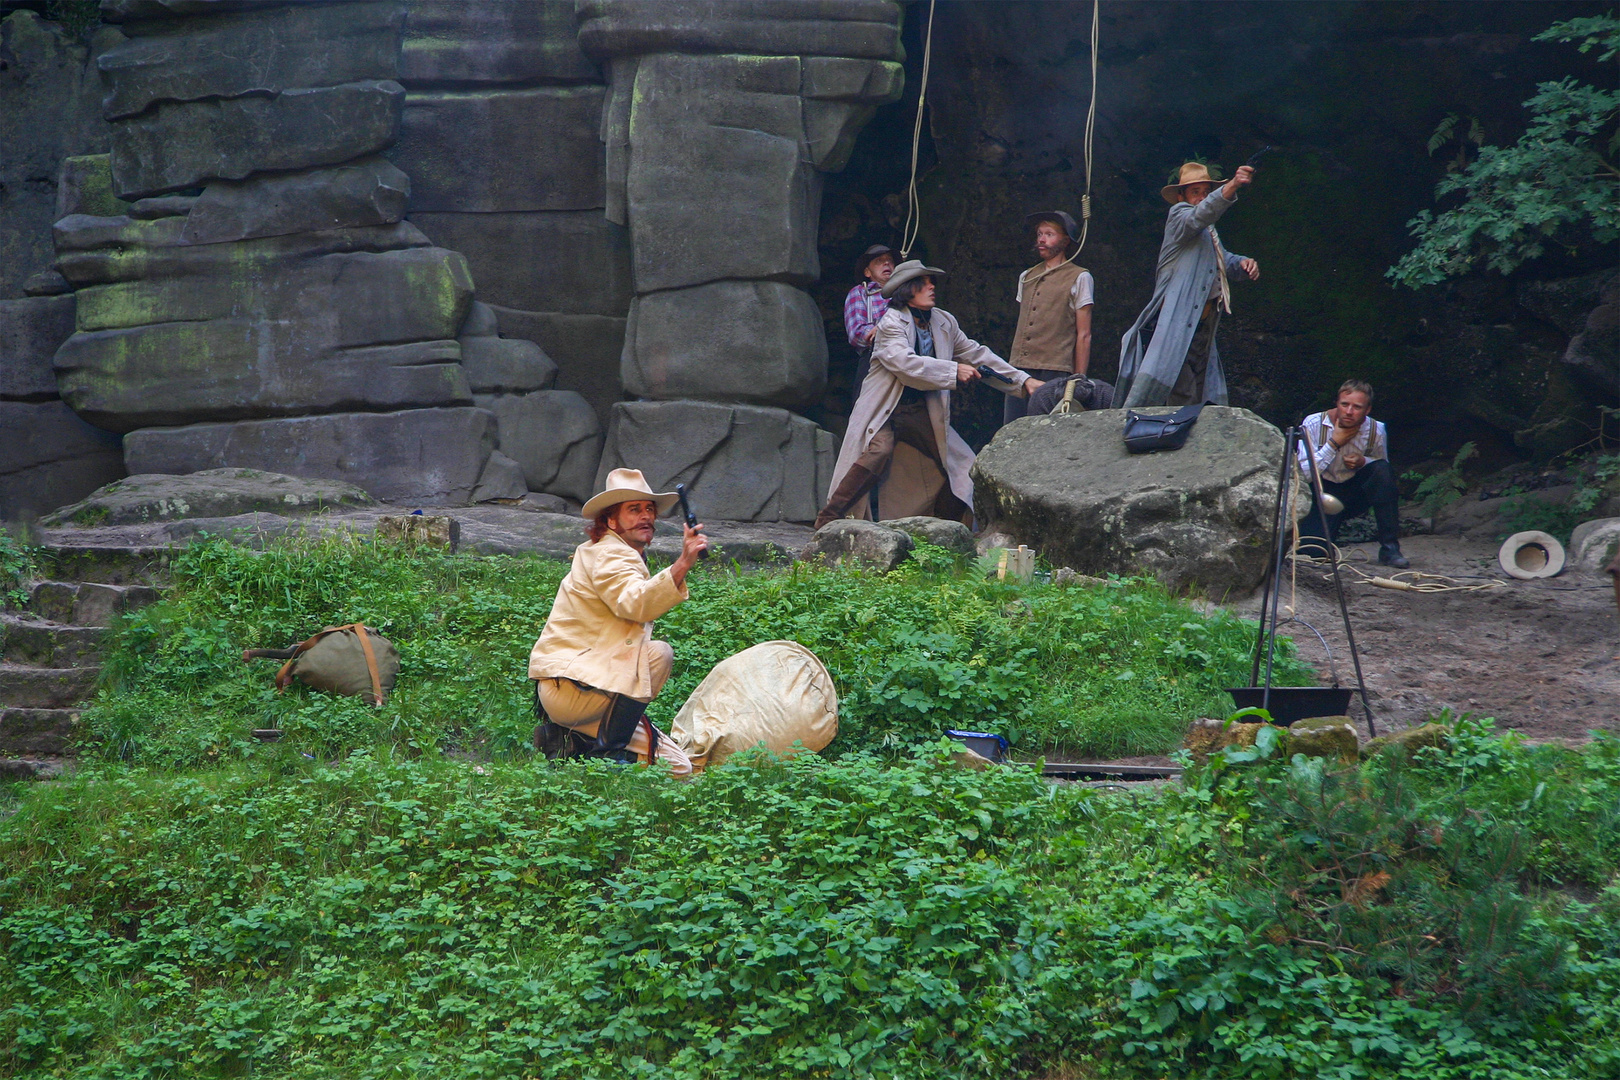 Felsenbühne Rathen mit einer Szene aus "Schatz am Silbersee"  